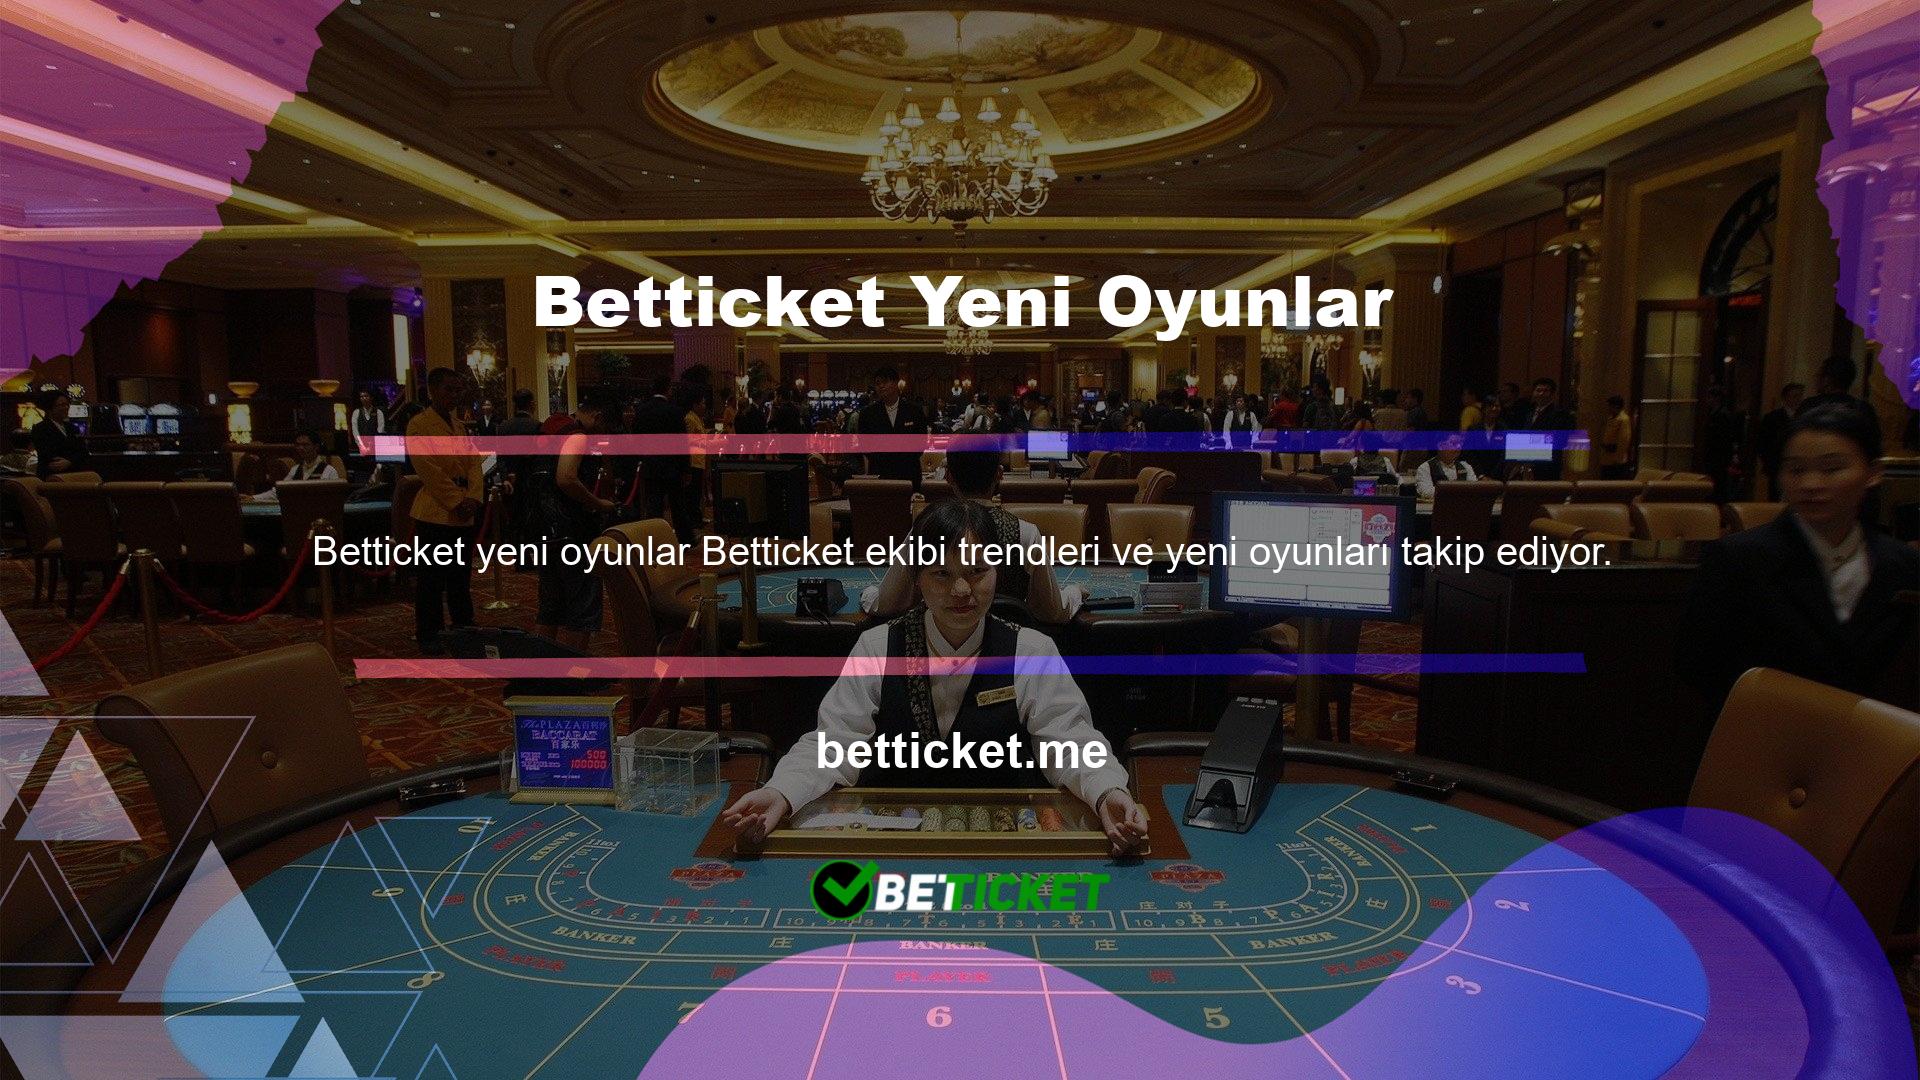 Her iki durumda da Betticket her zaman en fazla bahis seçeneğine sahip site olarak anılmıştır ve bu nedenle Betticket siz değerli üyelerine tüm spor, casino ve sanal seçenekleri sunmaktadır